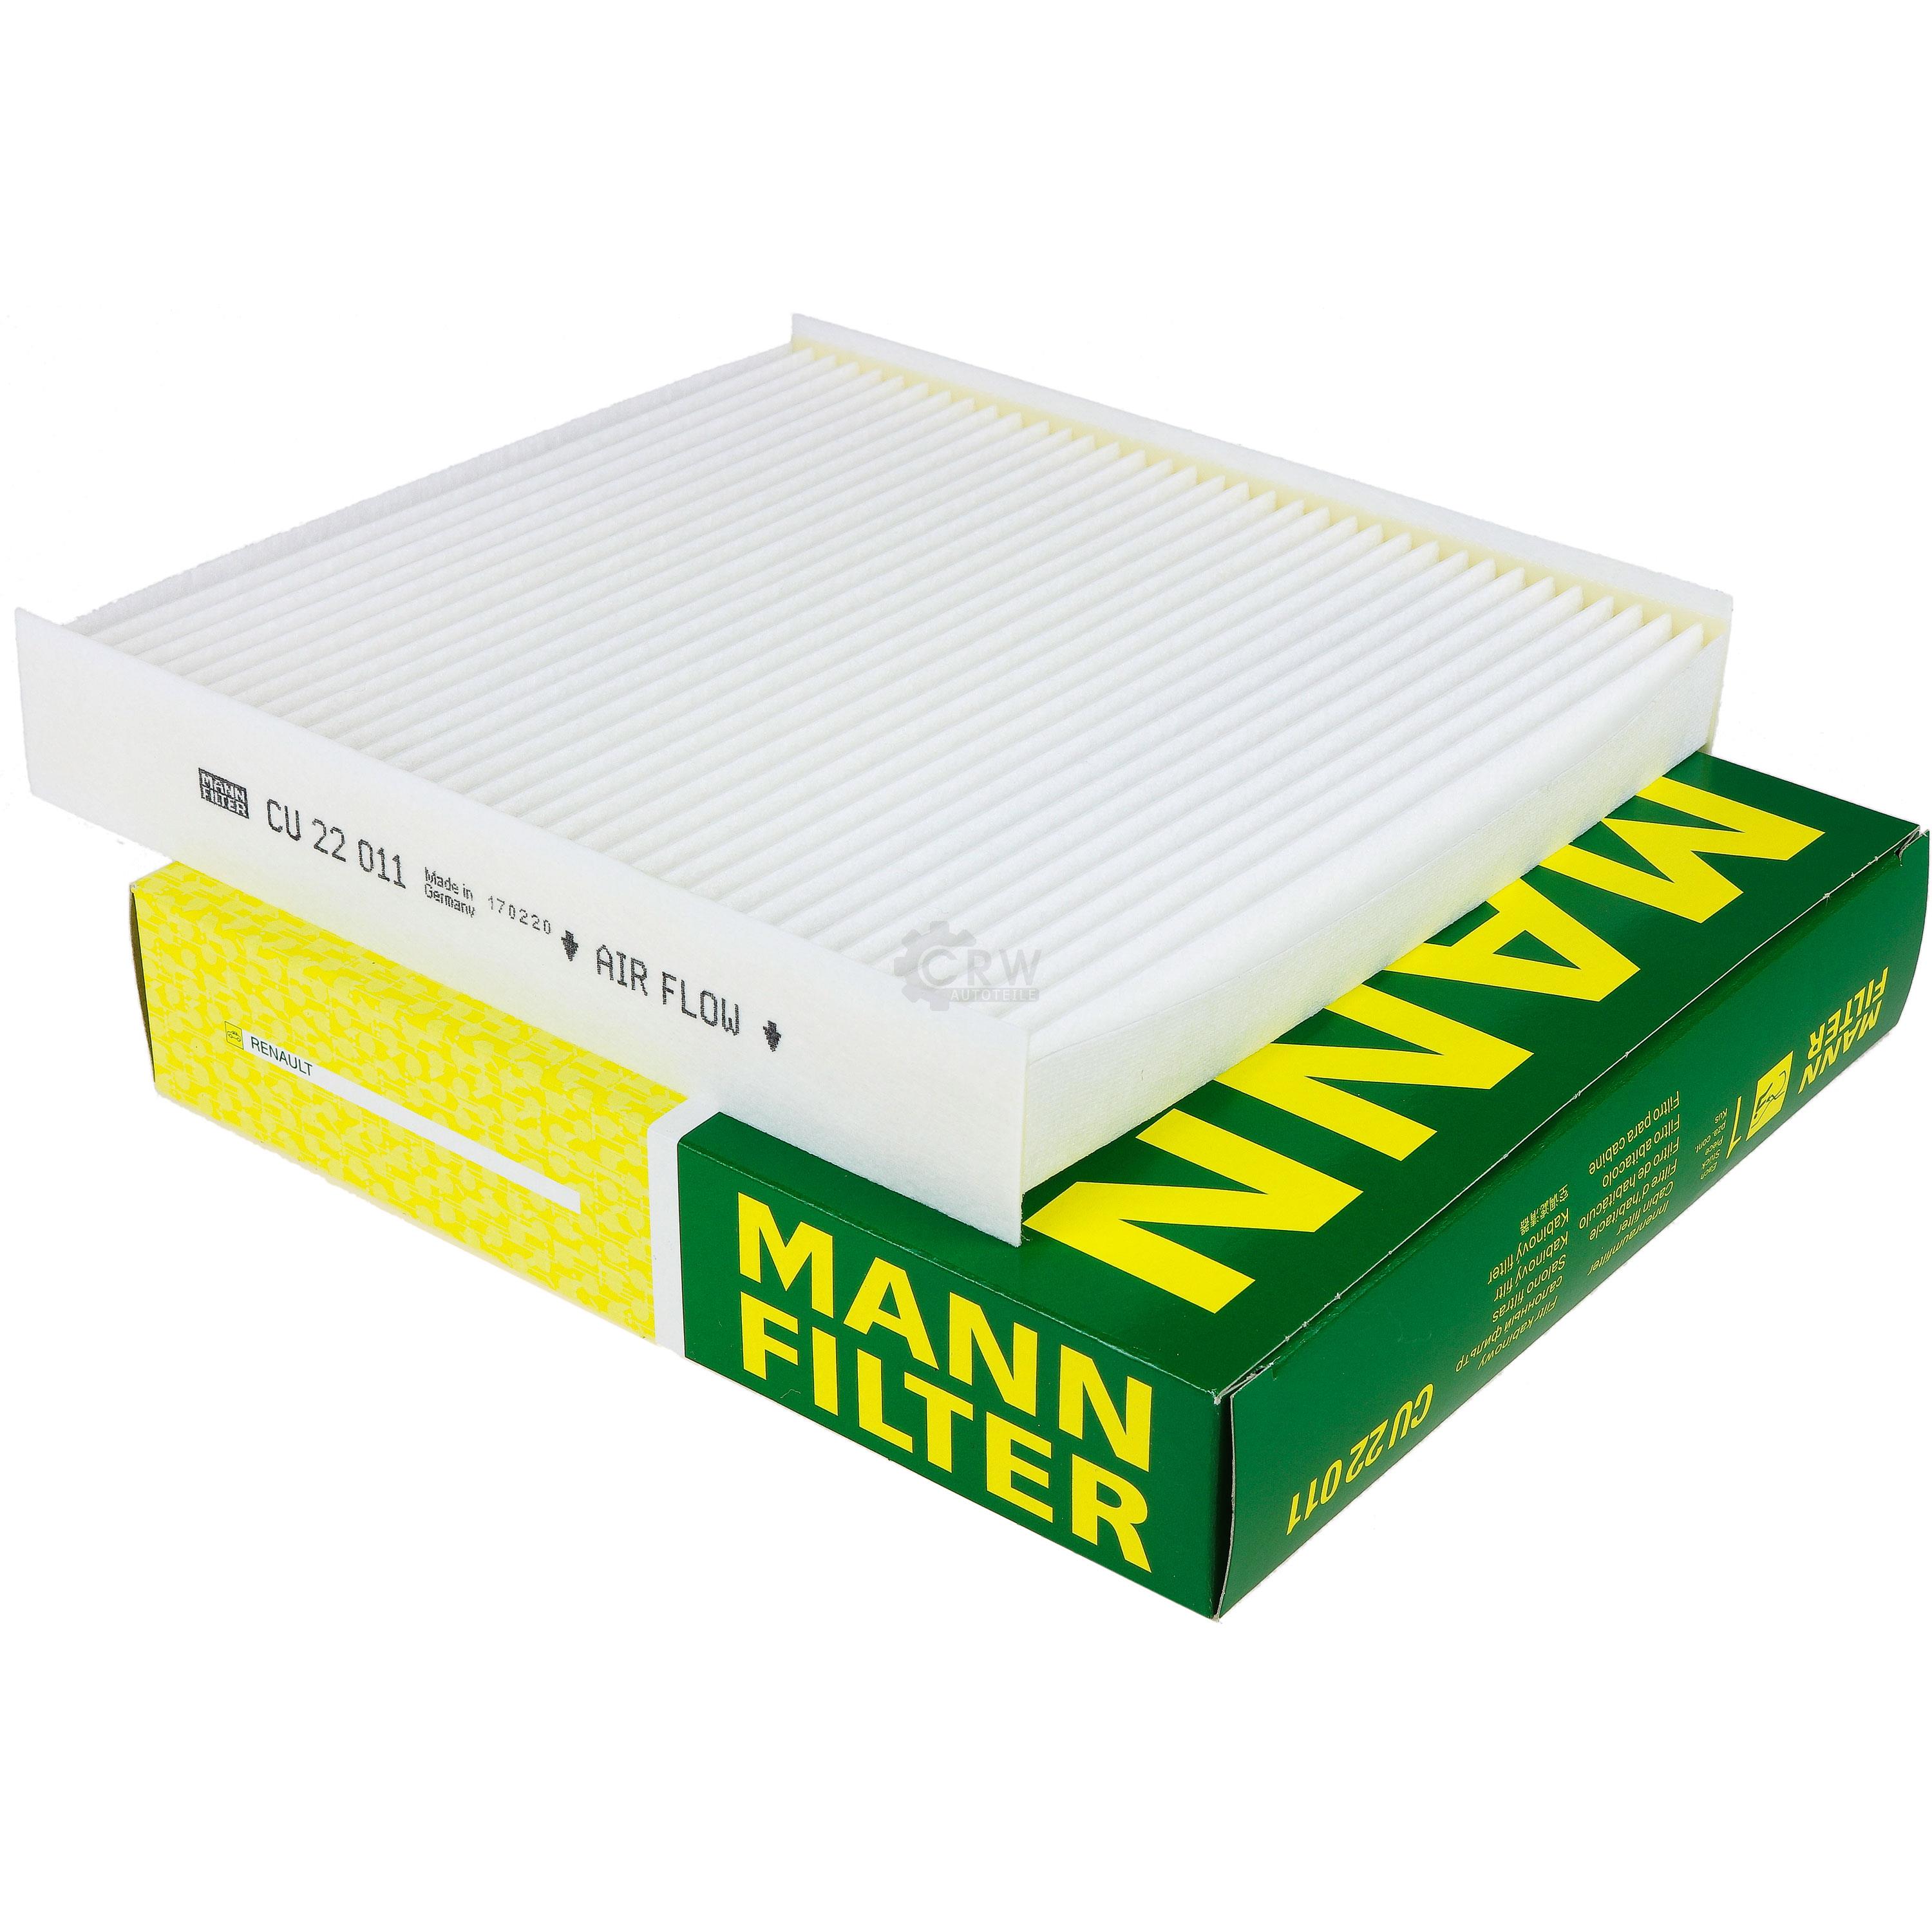 MANN-FILTER Innenraumfilter Pollenfilter CU 22 011